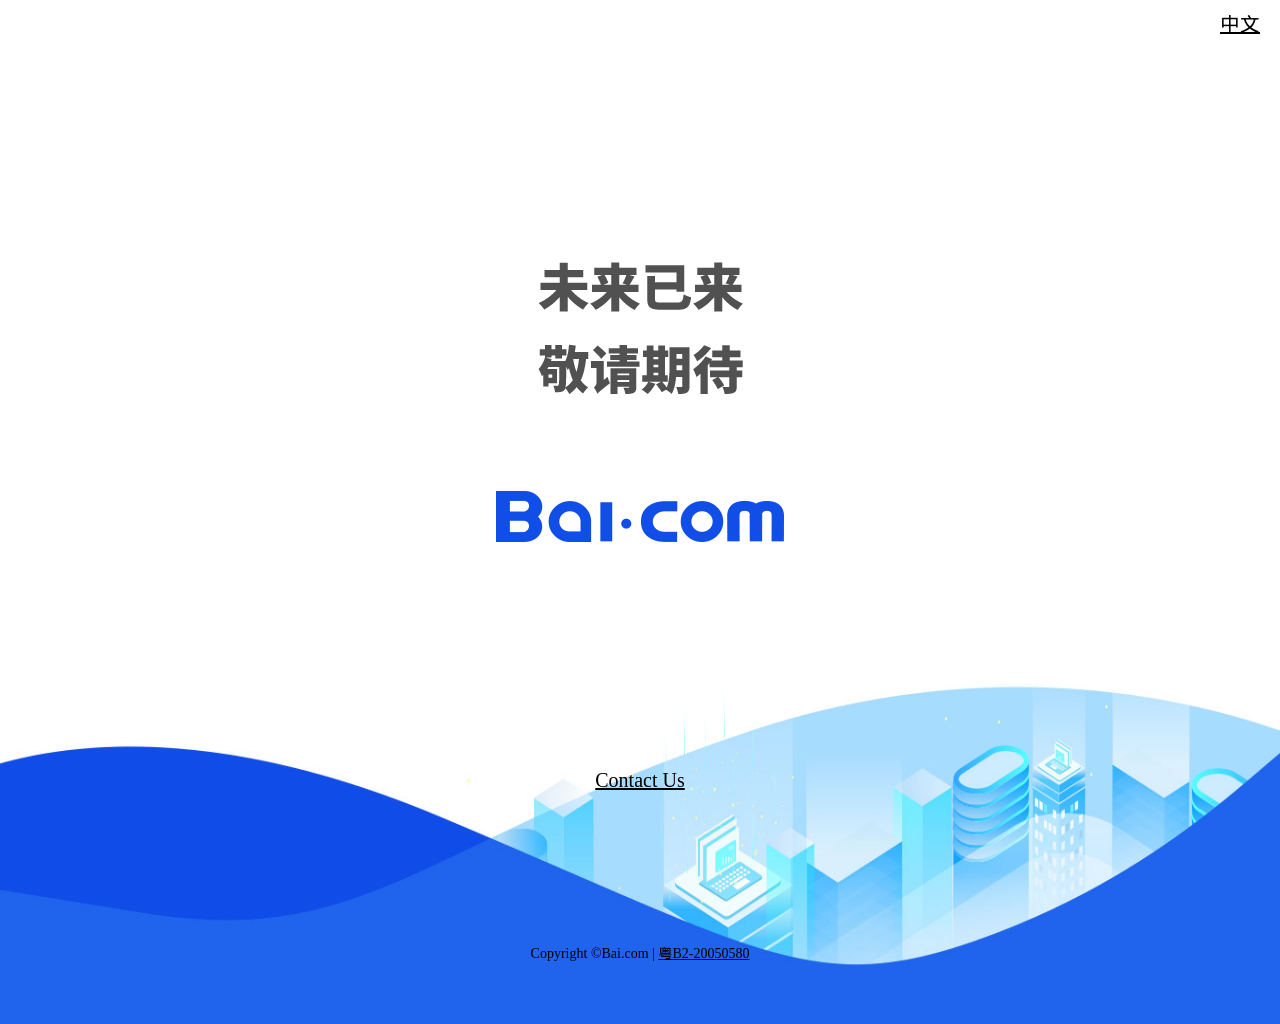 bai.com